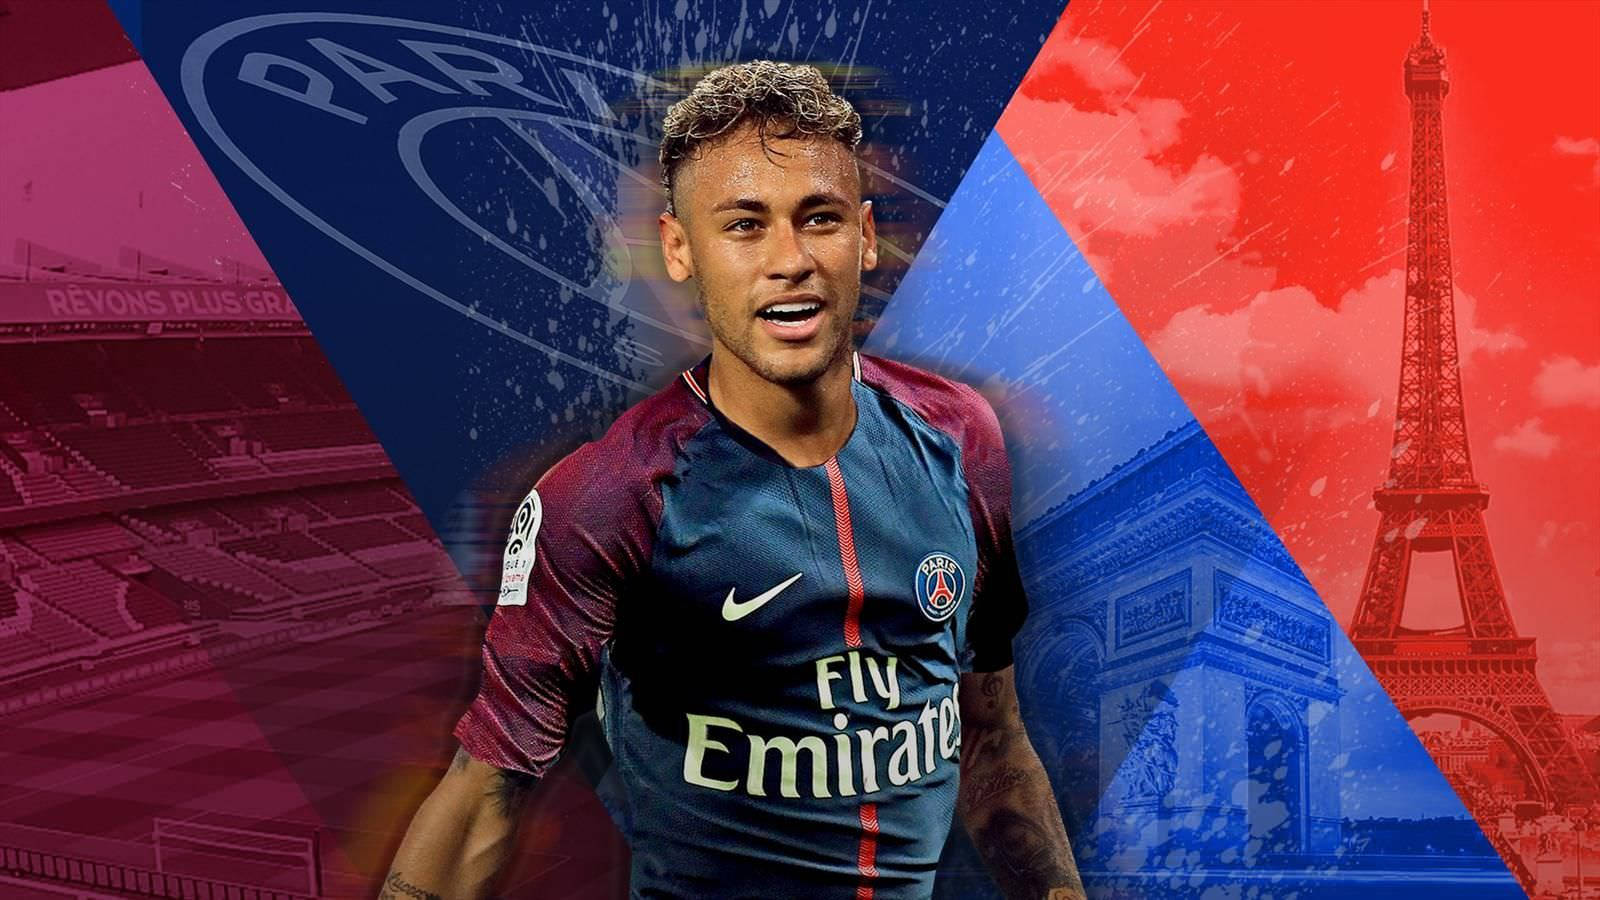 Neymar in a vibrant geometric backdrop Wallpaper